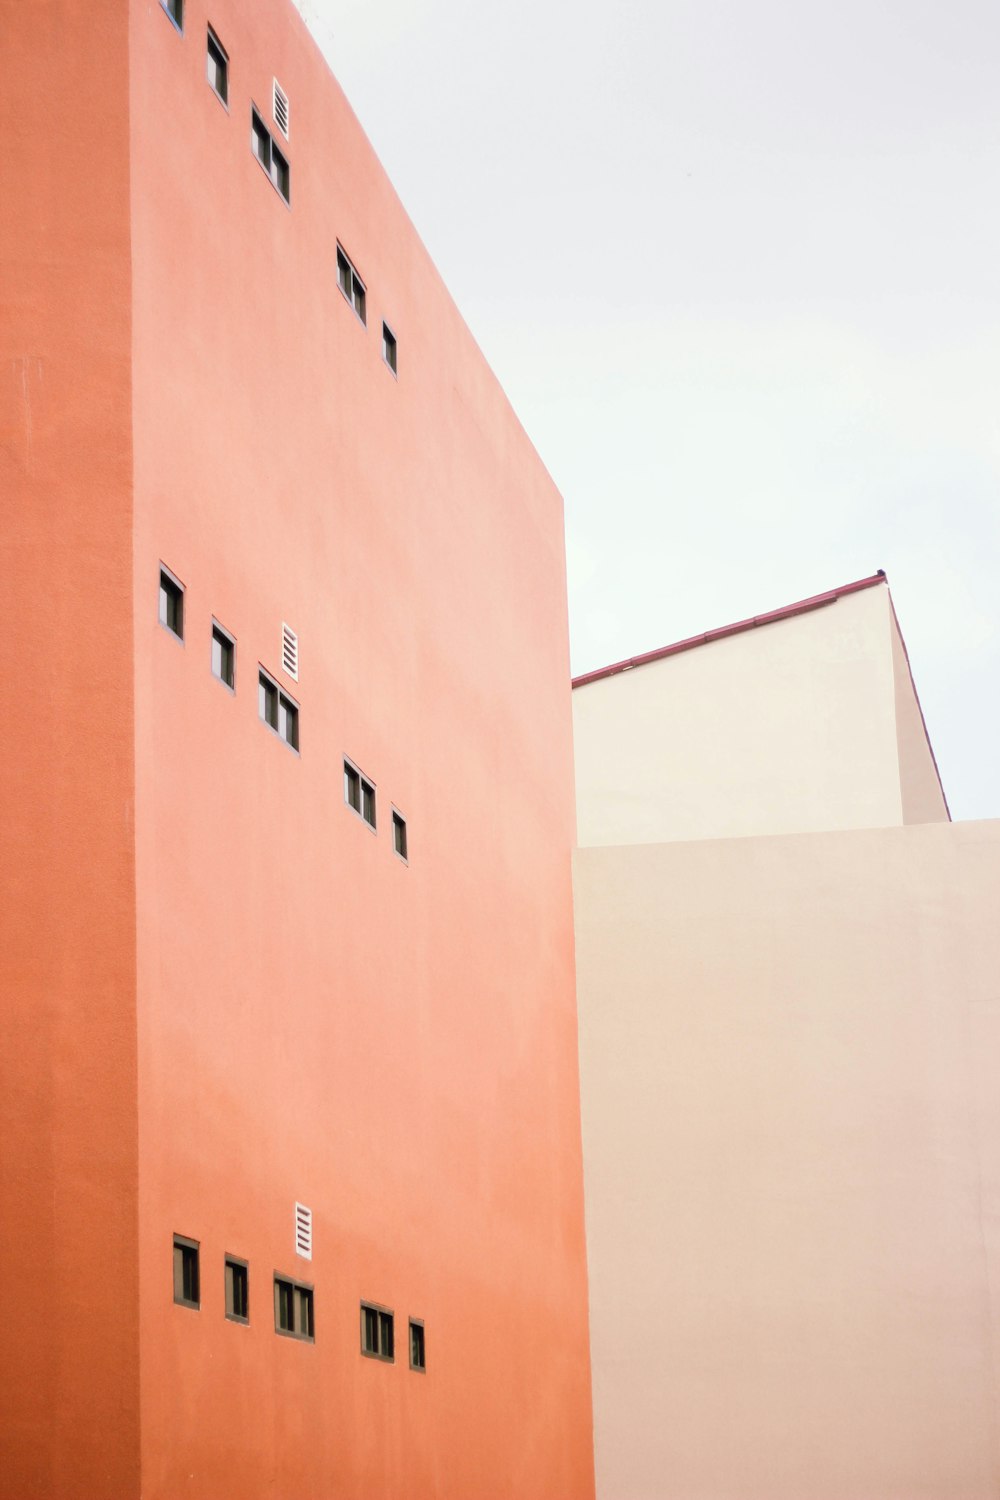 주황색 페인트 건물